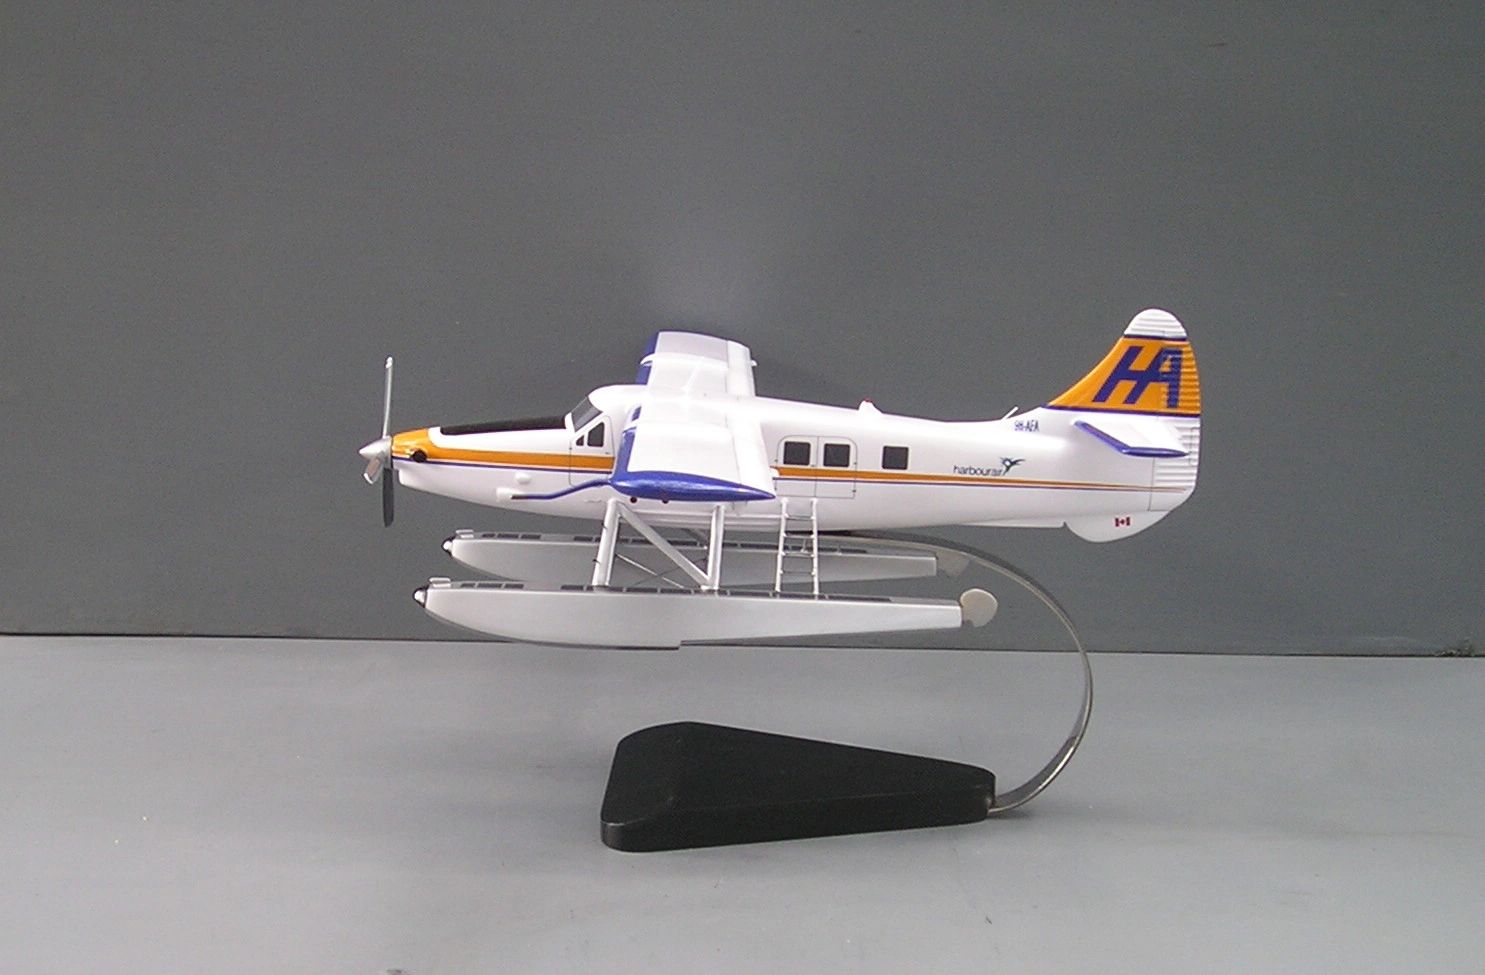 DHC-3T Otter custom model